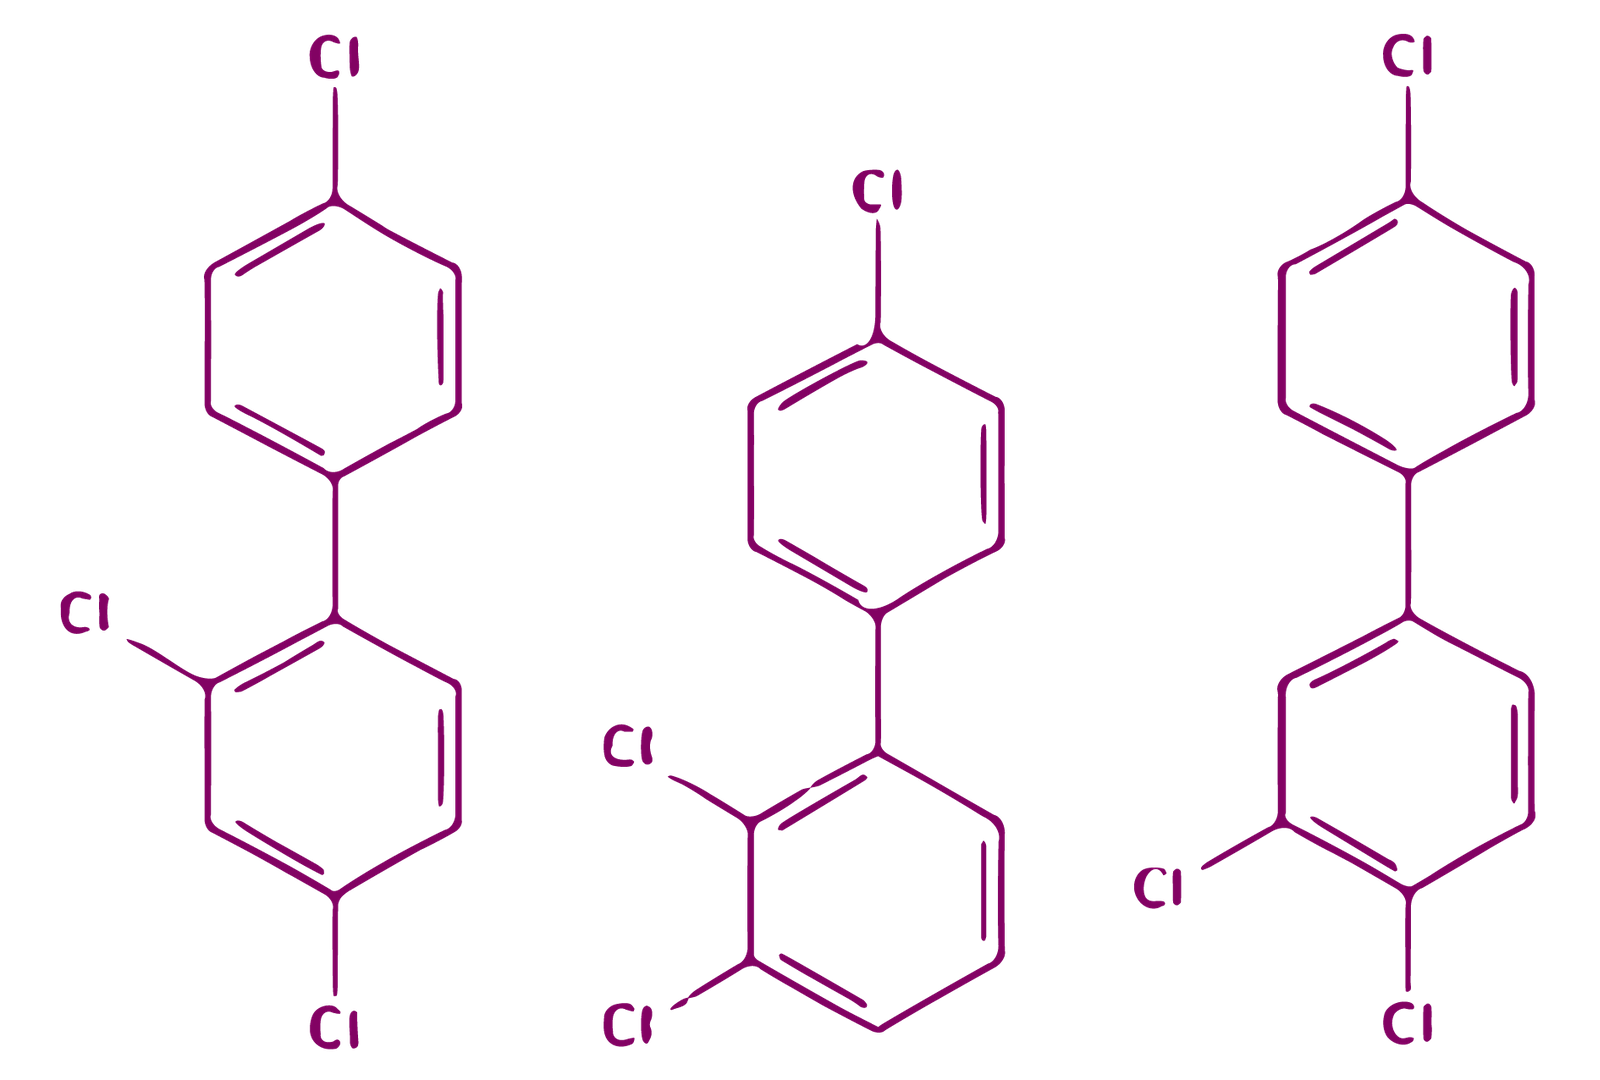 Croquis montrant la structure moléculaire de trois molécules de BPC, contenant chacune trois atomes de chlore.